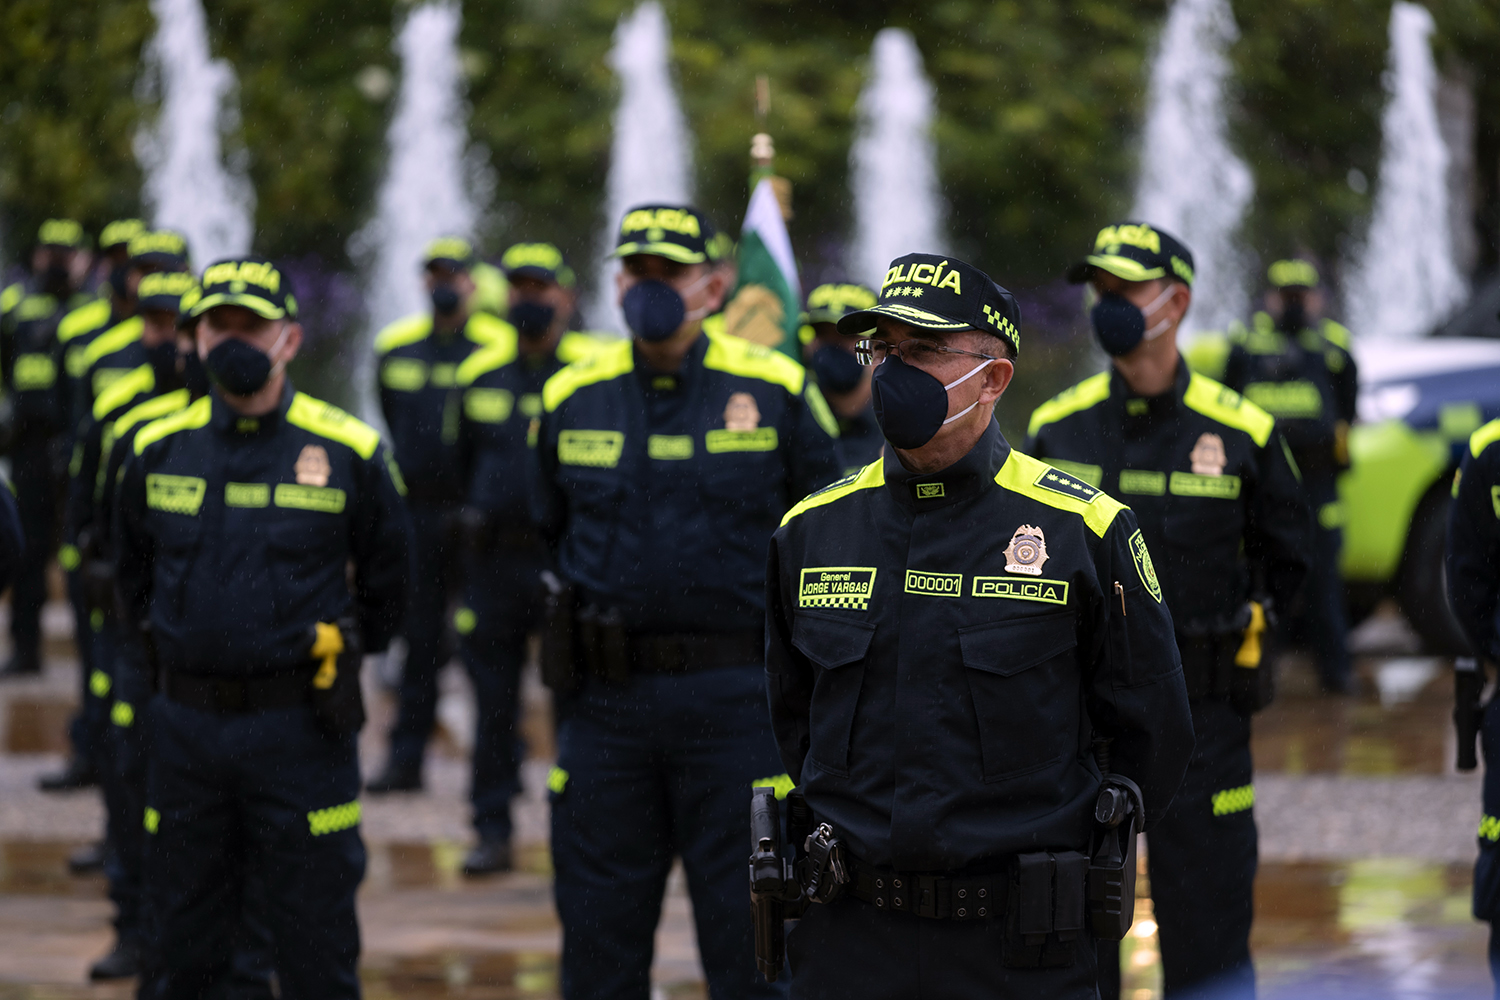 La Policía Nacional de Colombia estrena uniforme azul - Segurilatam